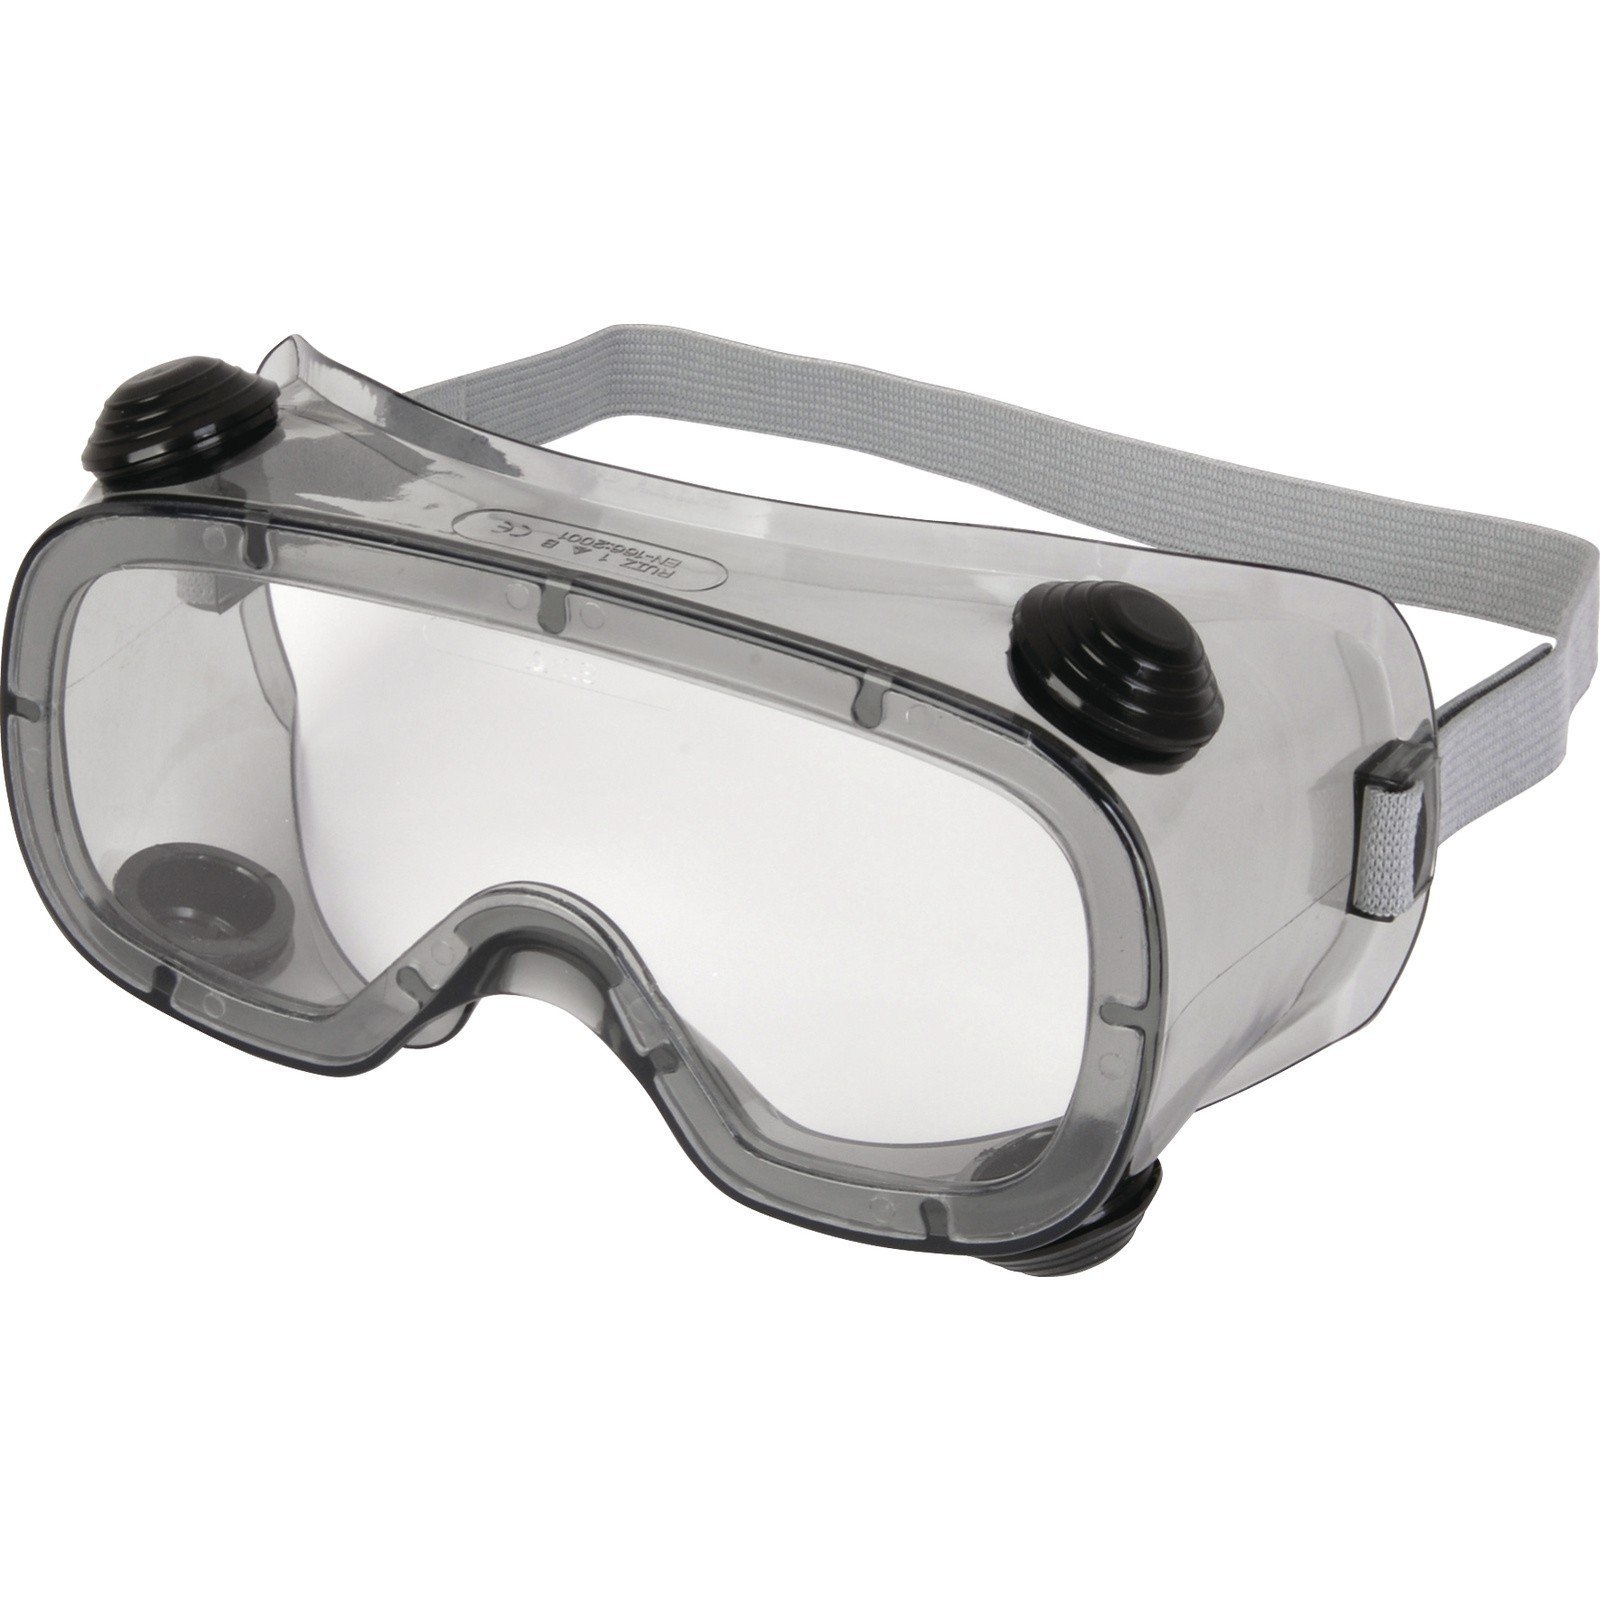 Защитные очки от пыли. Очки Delta Plus. Очки DELTAPLUS ruiz1 Acetate. Очки Delta Plus Taalvi. Очки с непрямой вентиляцией Дельта.